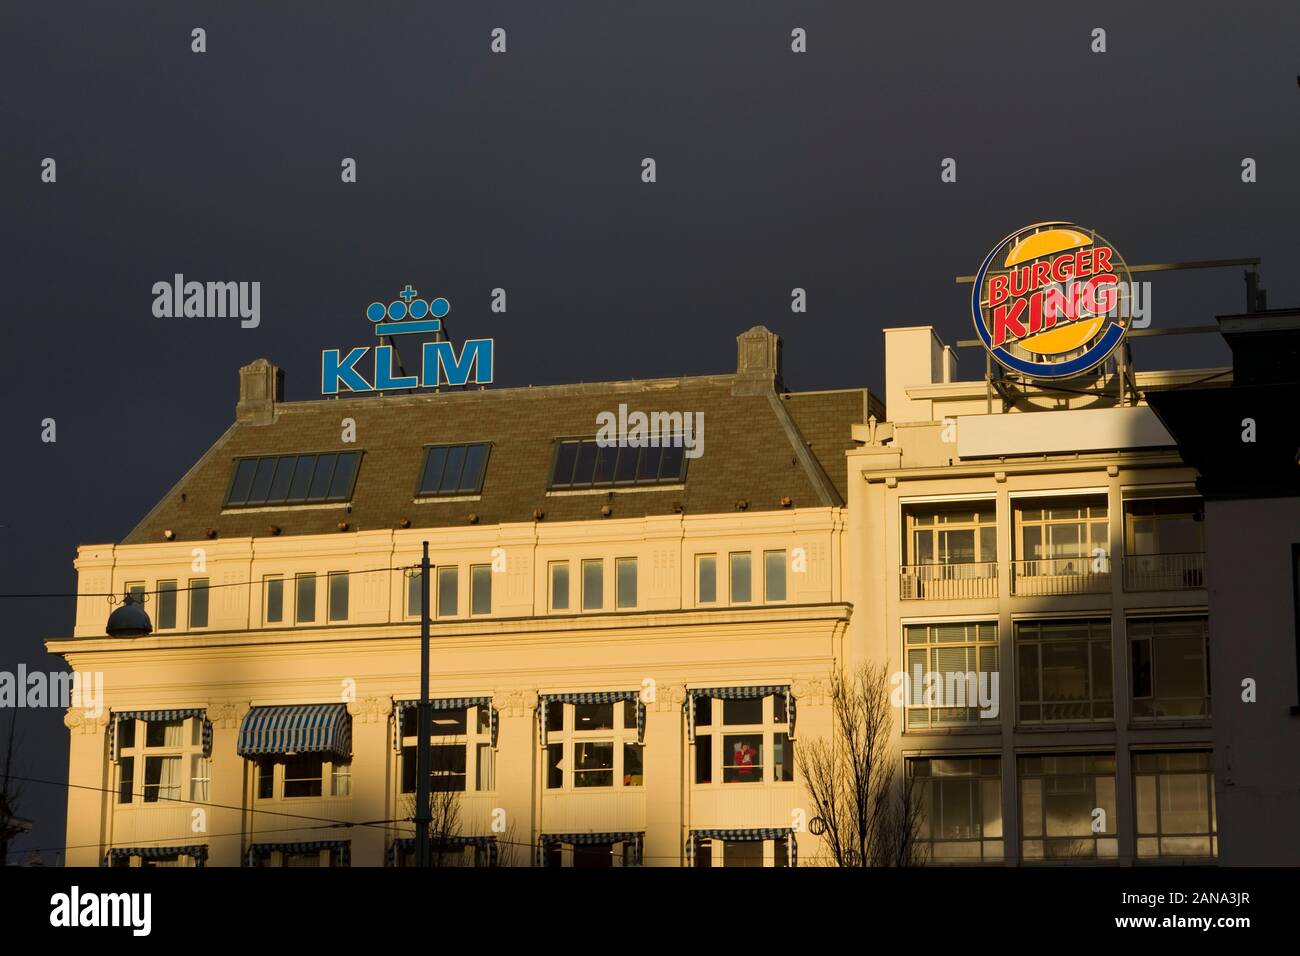 Panneaux d'affichage de KLM et Burger King avec un ciel sombre, Amsterdam Banque D'Images